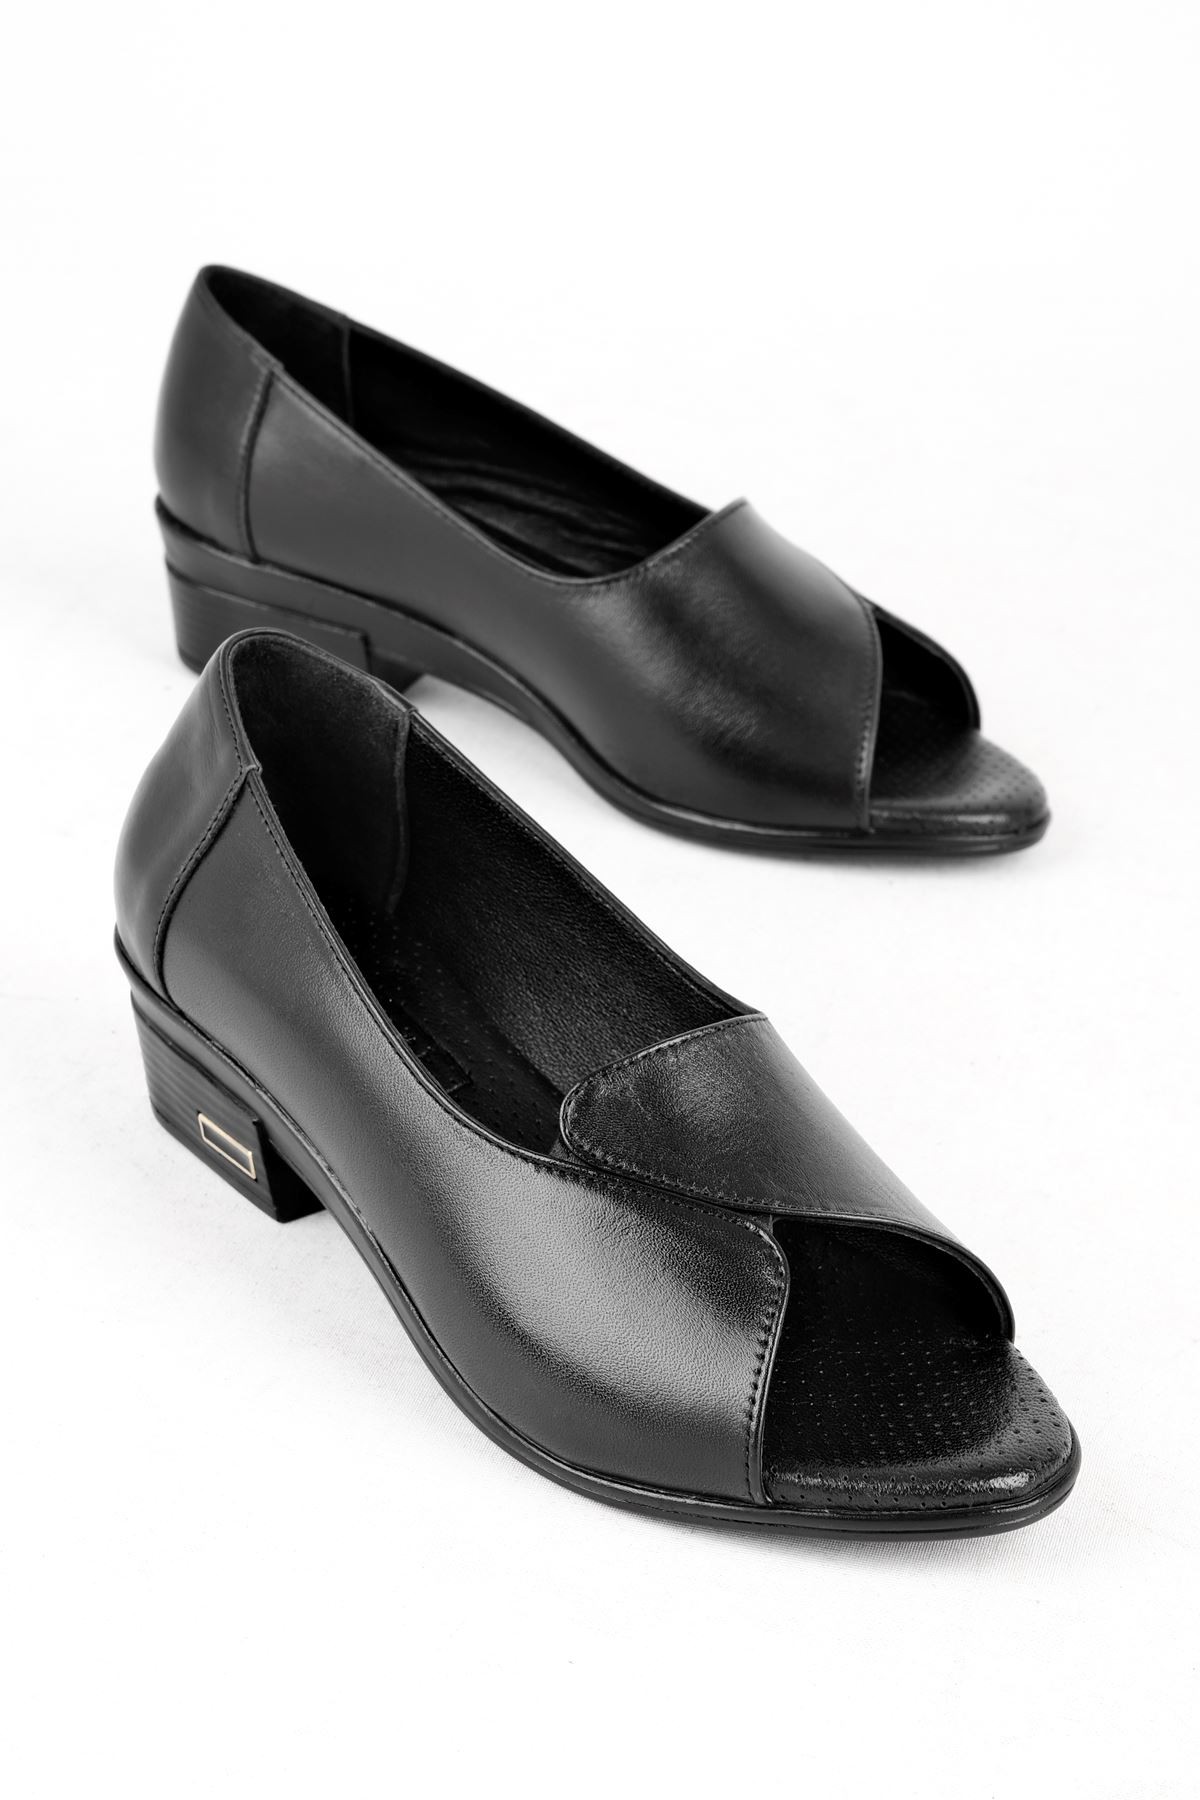 Suvy Önü Açık Kadın Hakiki Deri Topuklu Ayakkabı B3181 - Siyah